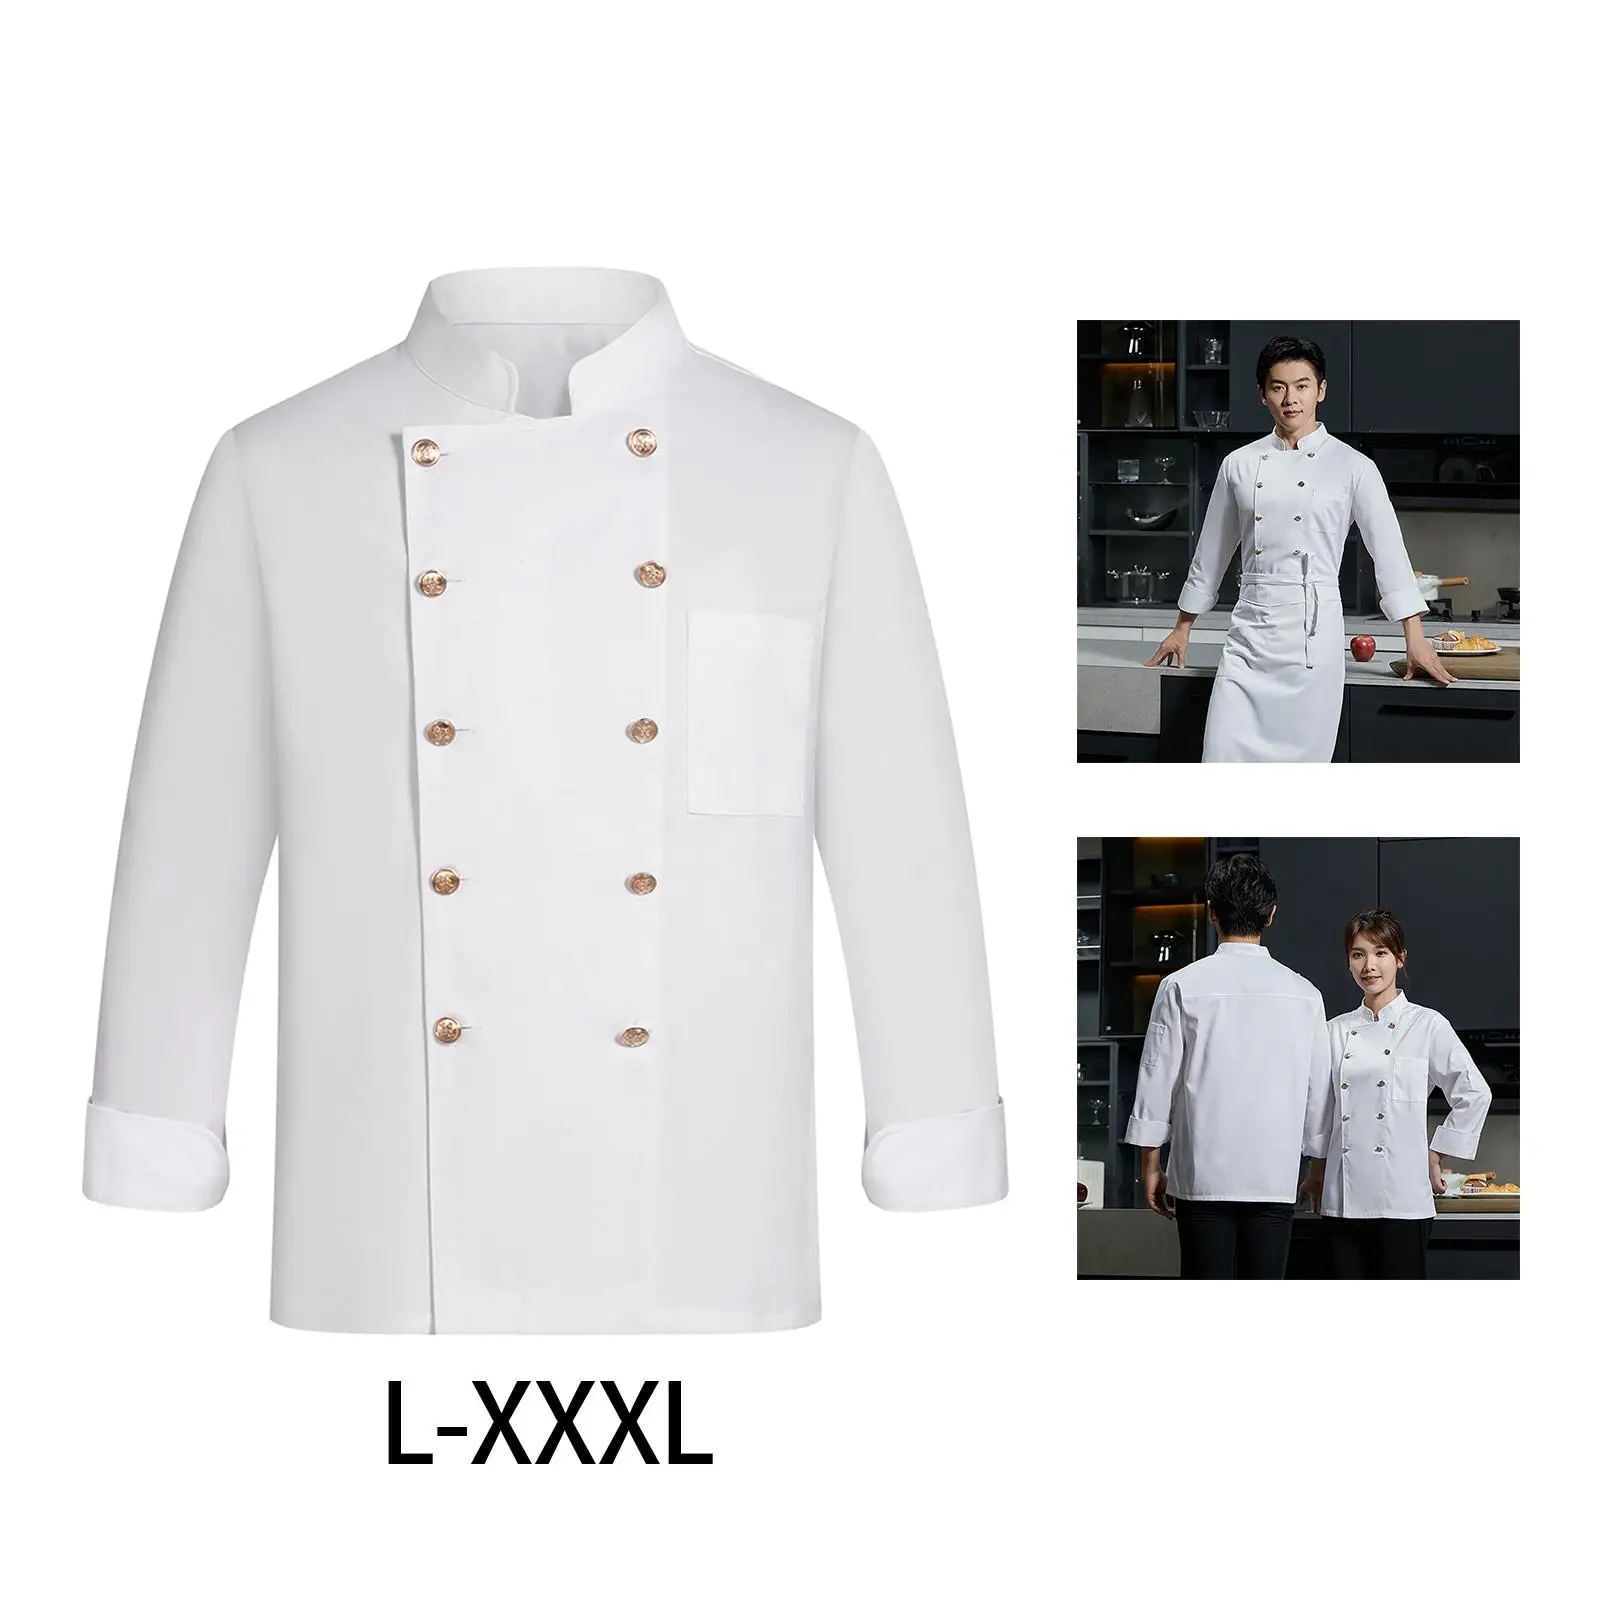 Universal Chef Clothes Sweat Absorption Work Wear Jacket Chef restaurant